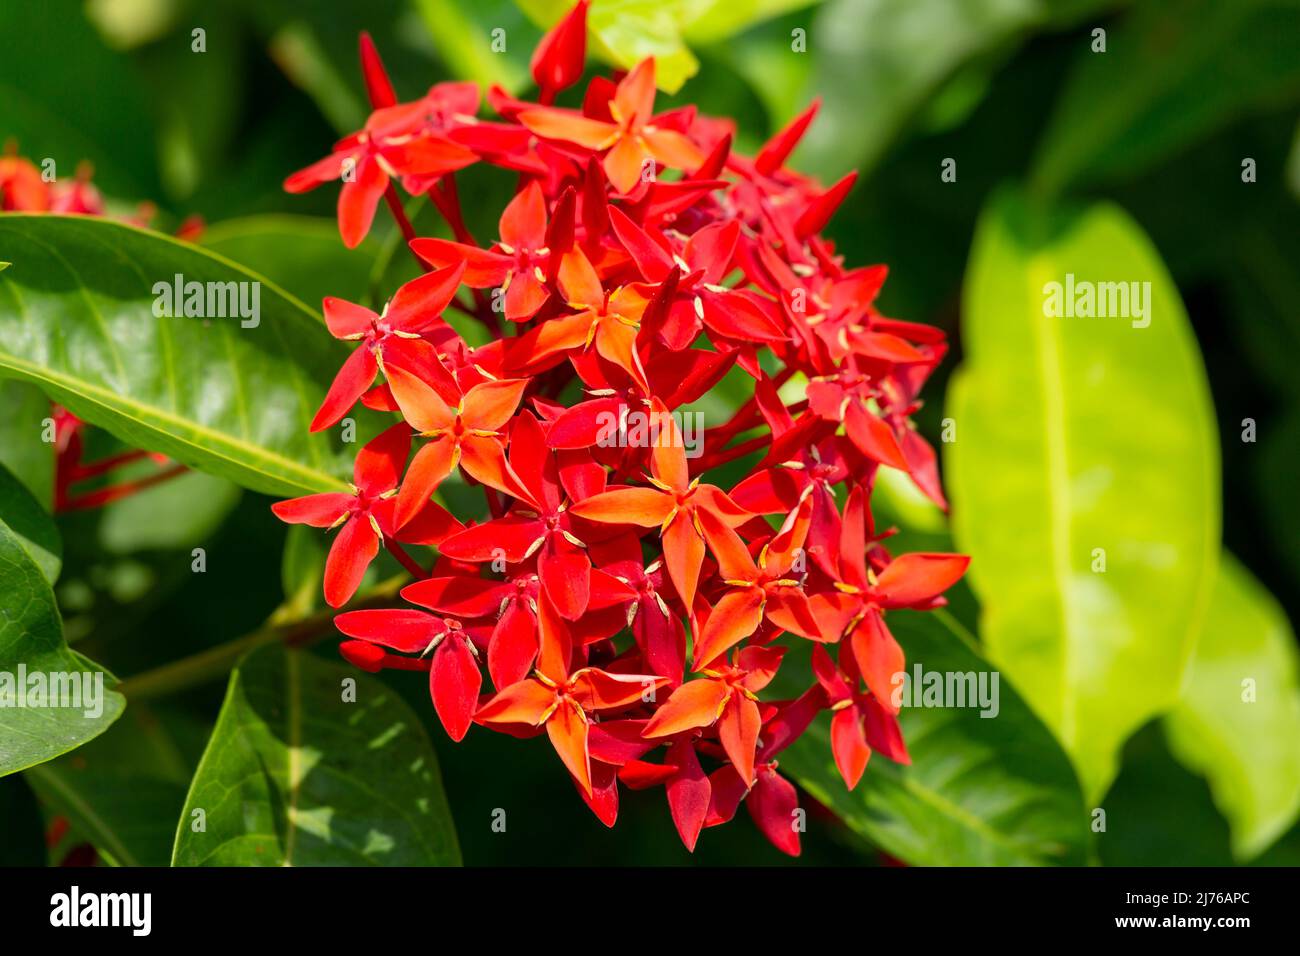 Ixora coccinea flower, Dusit Thani Hotel Resort, Hua Hin, province de Prachuap Khiri Khan, Thaïlande, Golfe de Thaïlande, Asie Banque D'Images